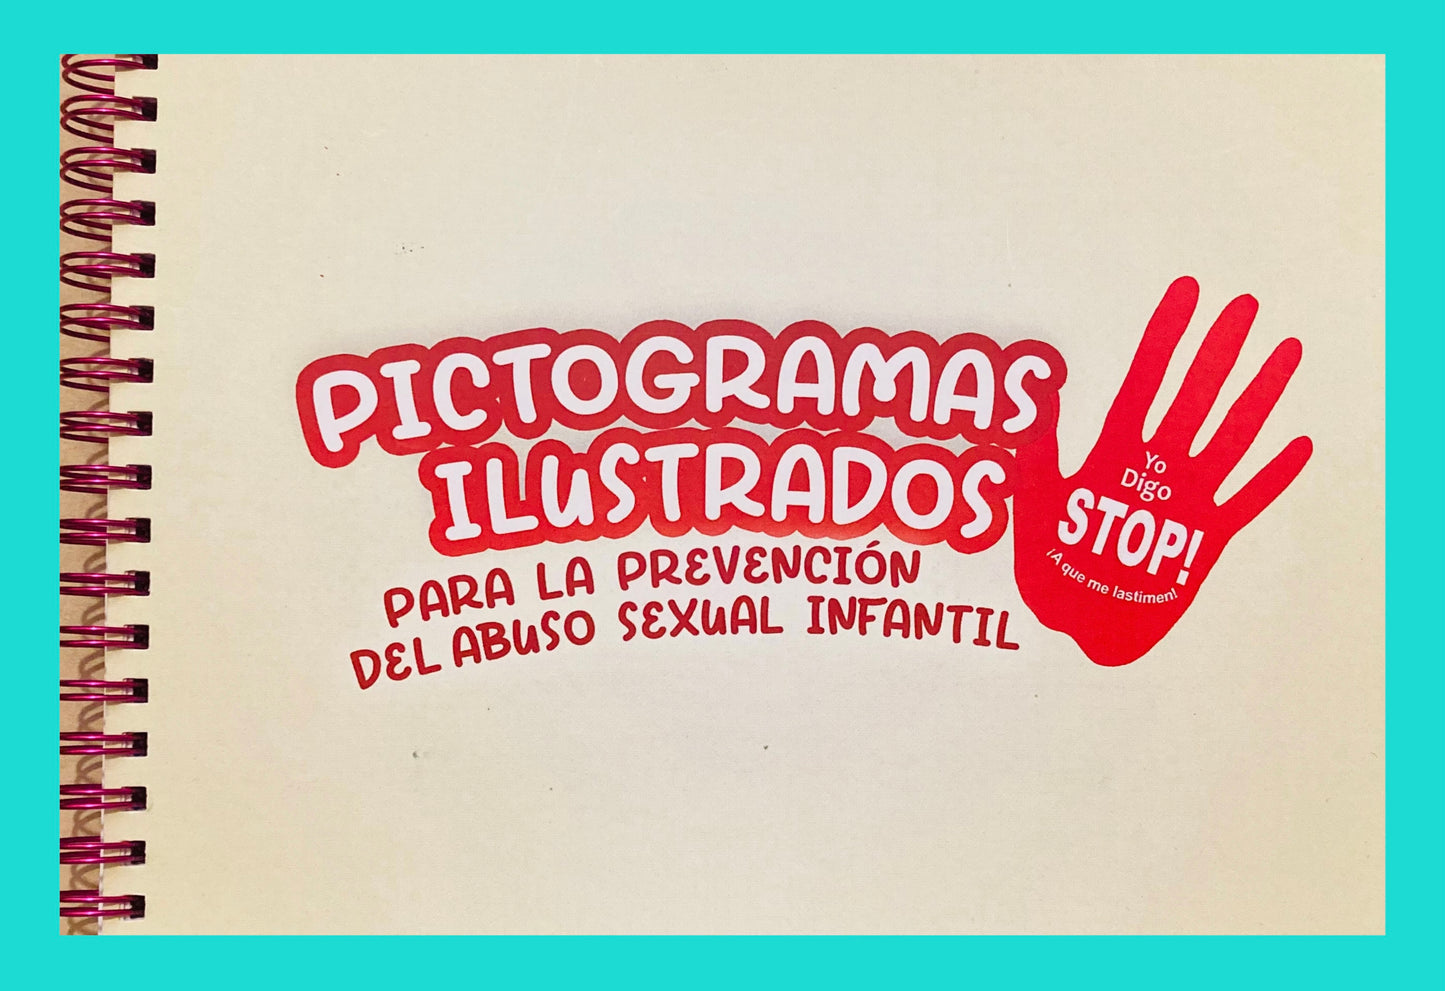 Prevención Abuso Sexual Infantil: Pictogramas Ilustrados